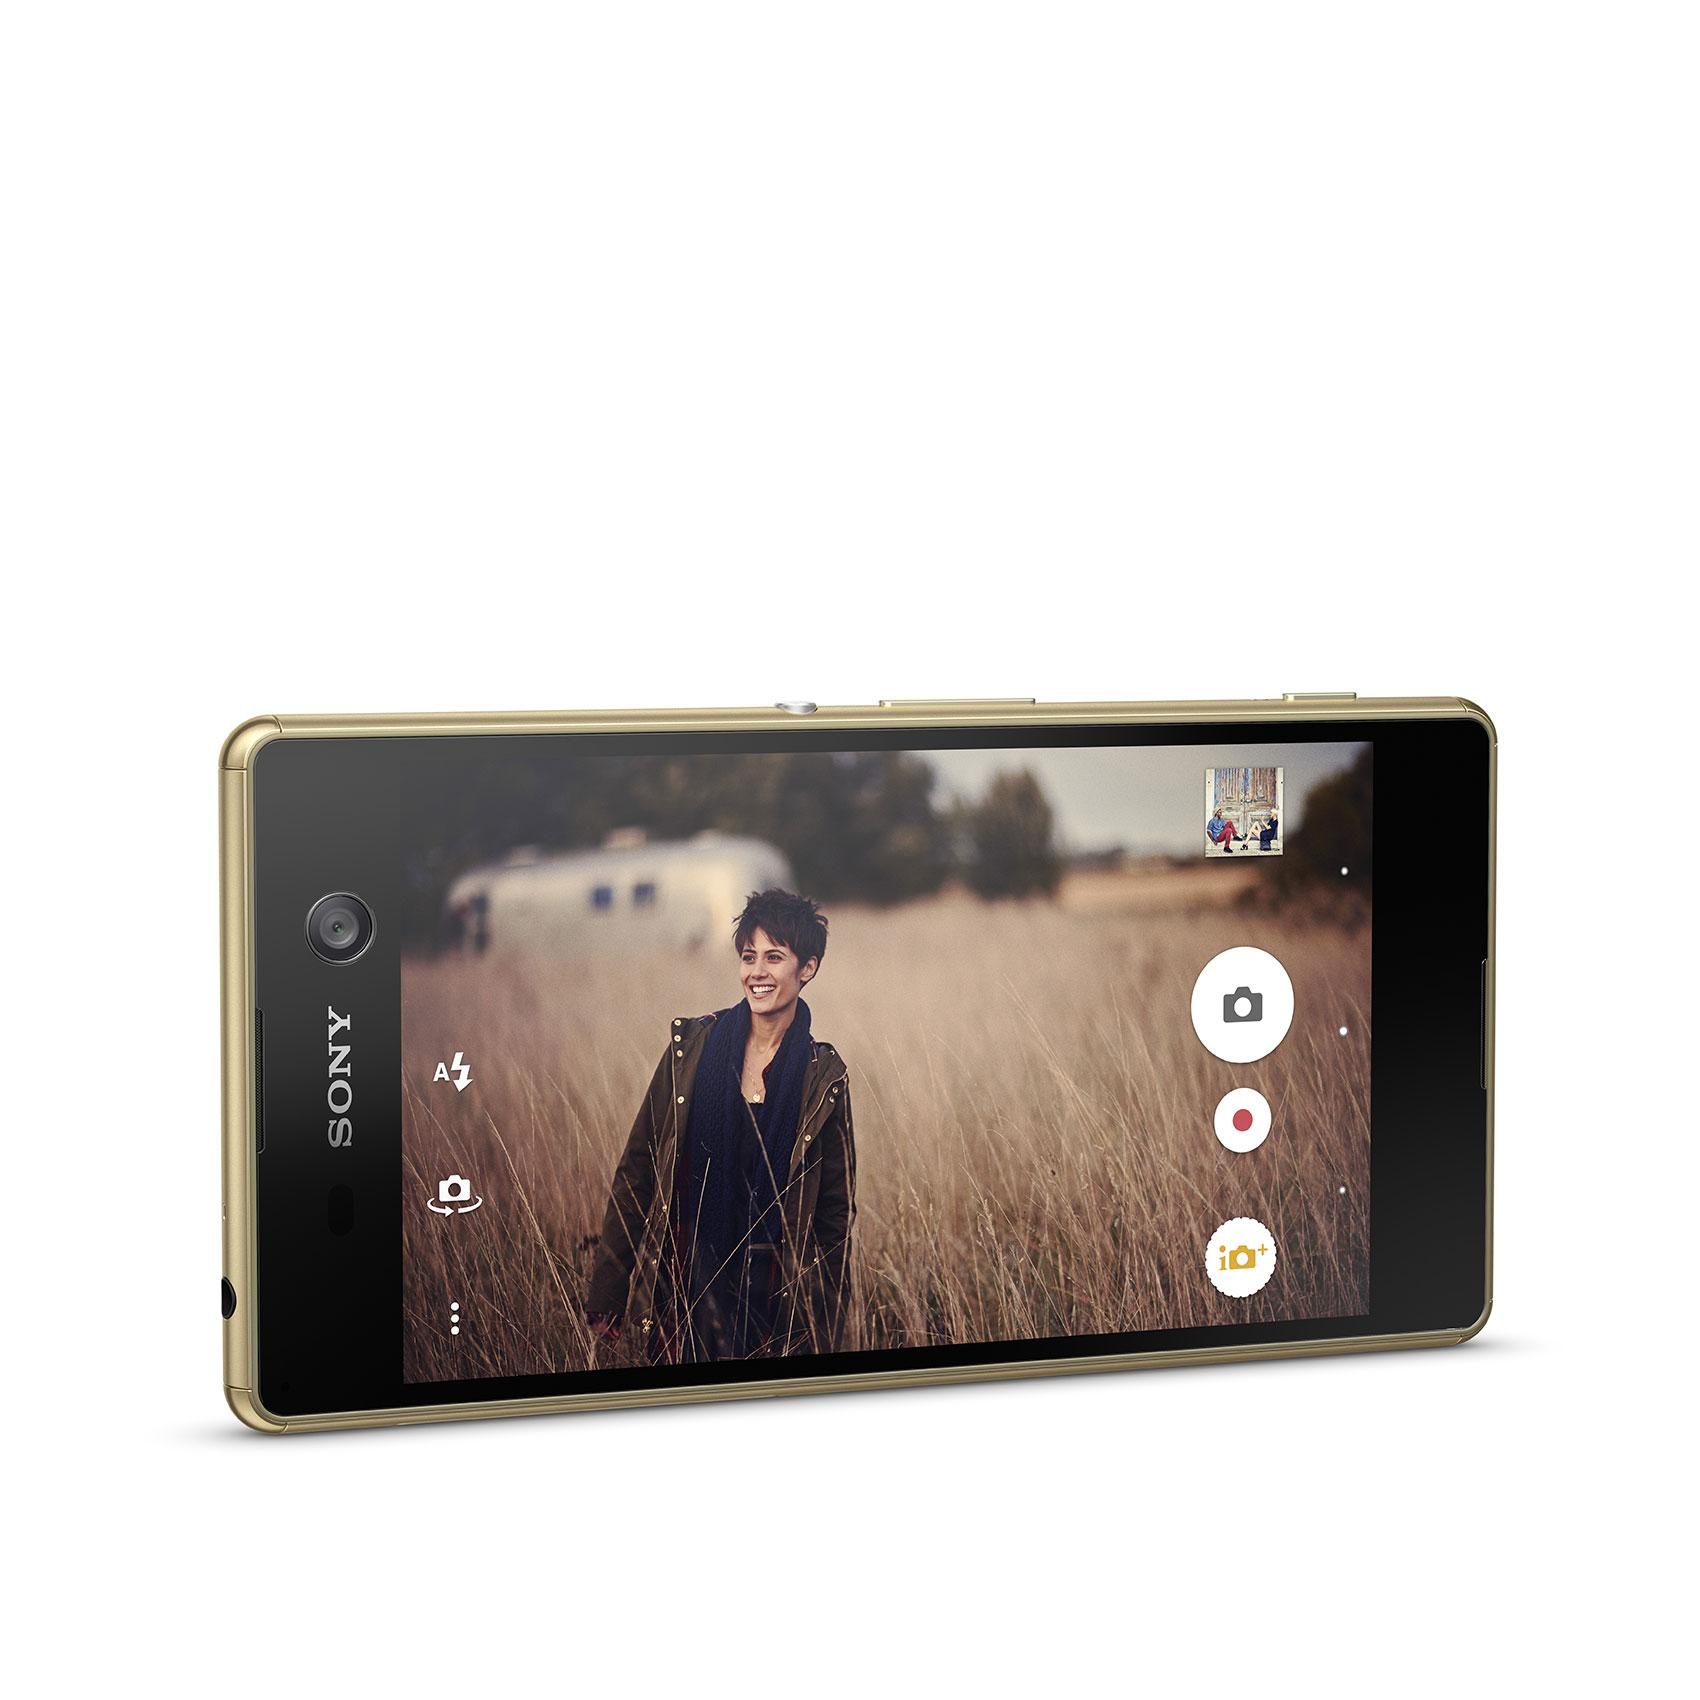 Sony Xperia M5 modo vídeo